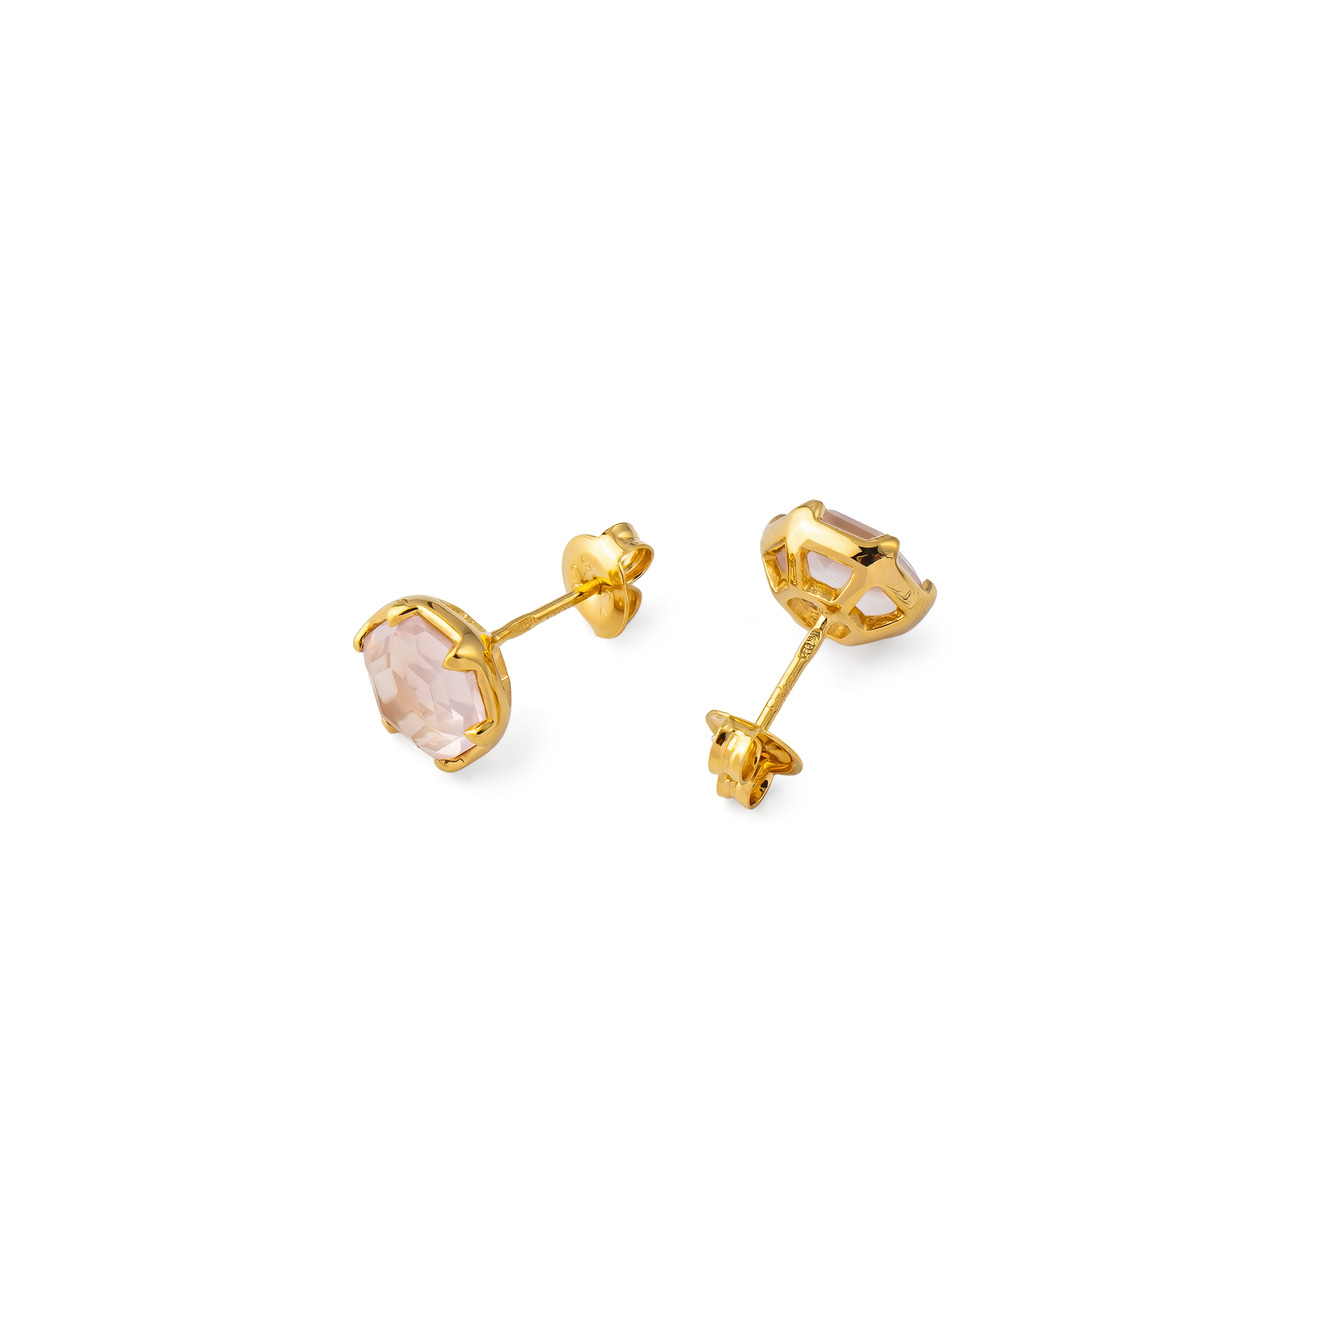 wisteria gems позолоченые серьги из двух квадратных камней лимонного и розового кварца Wisteria Gems Позолоченые серьги-шестиугольники из серебра из розового кварца